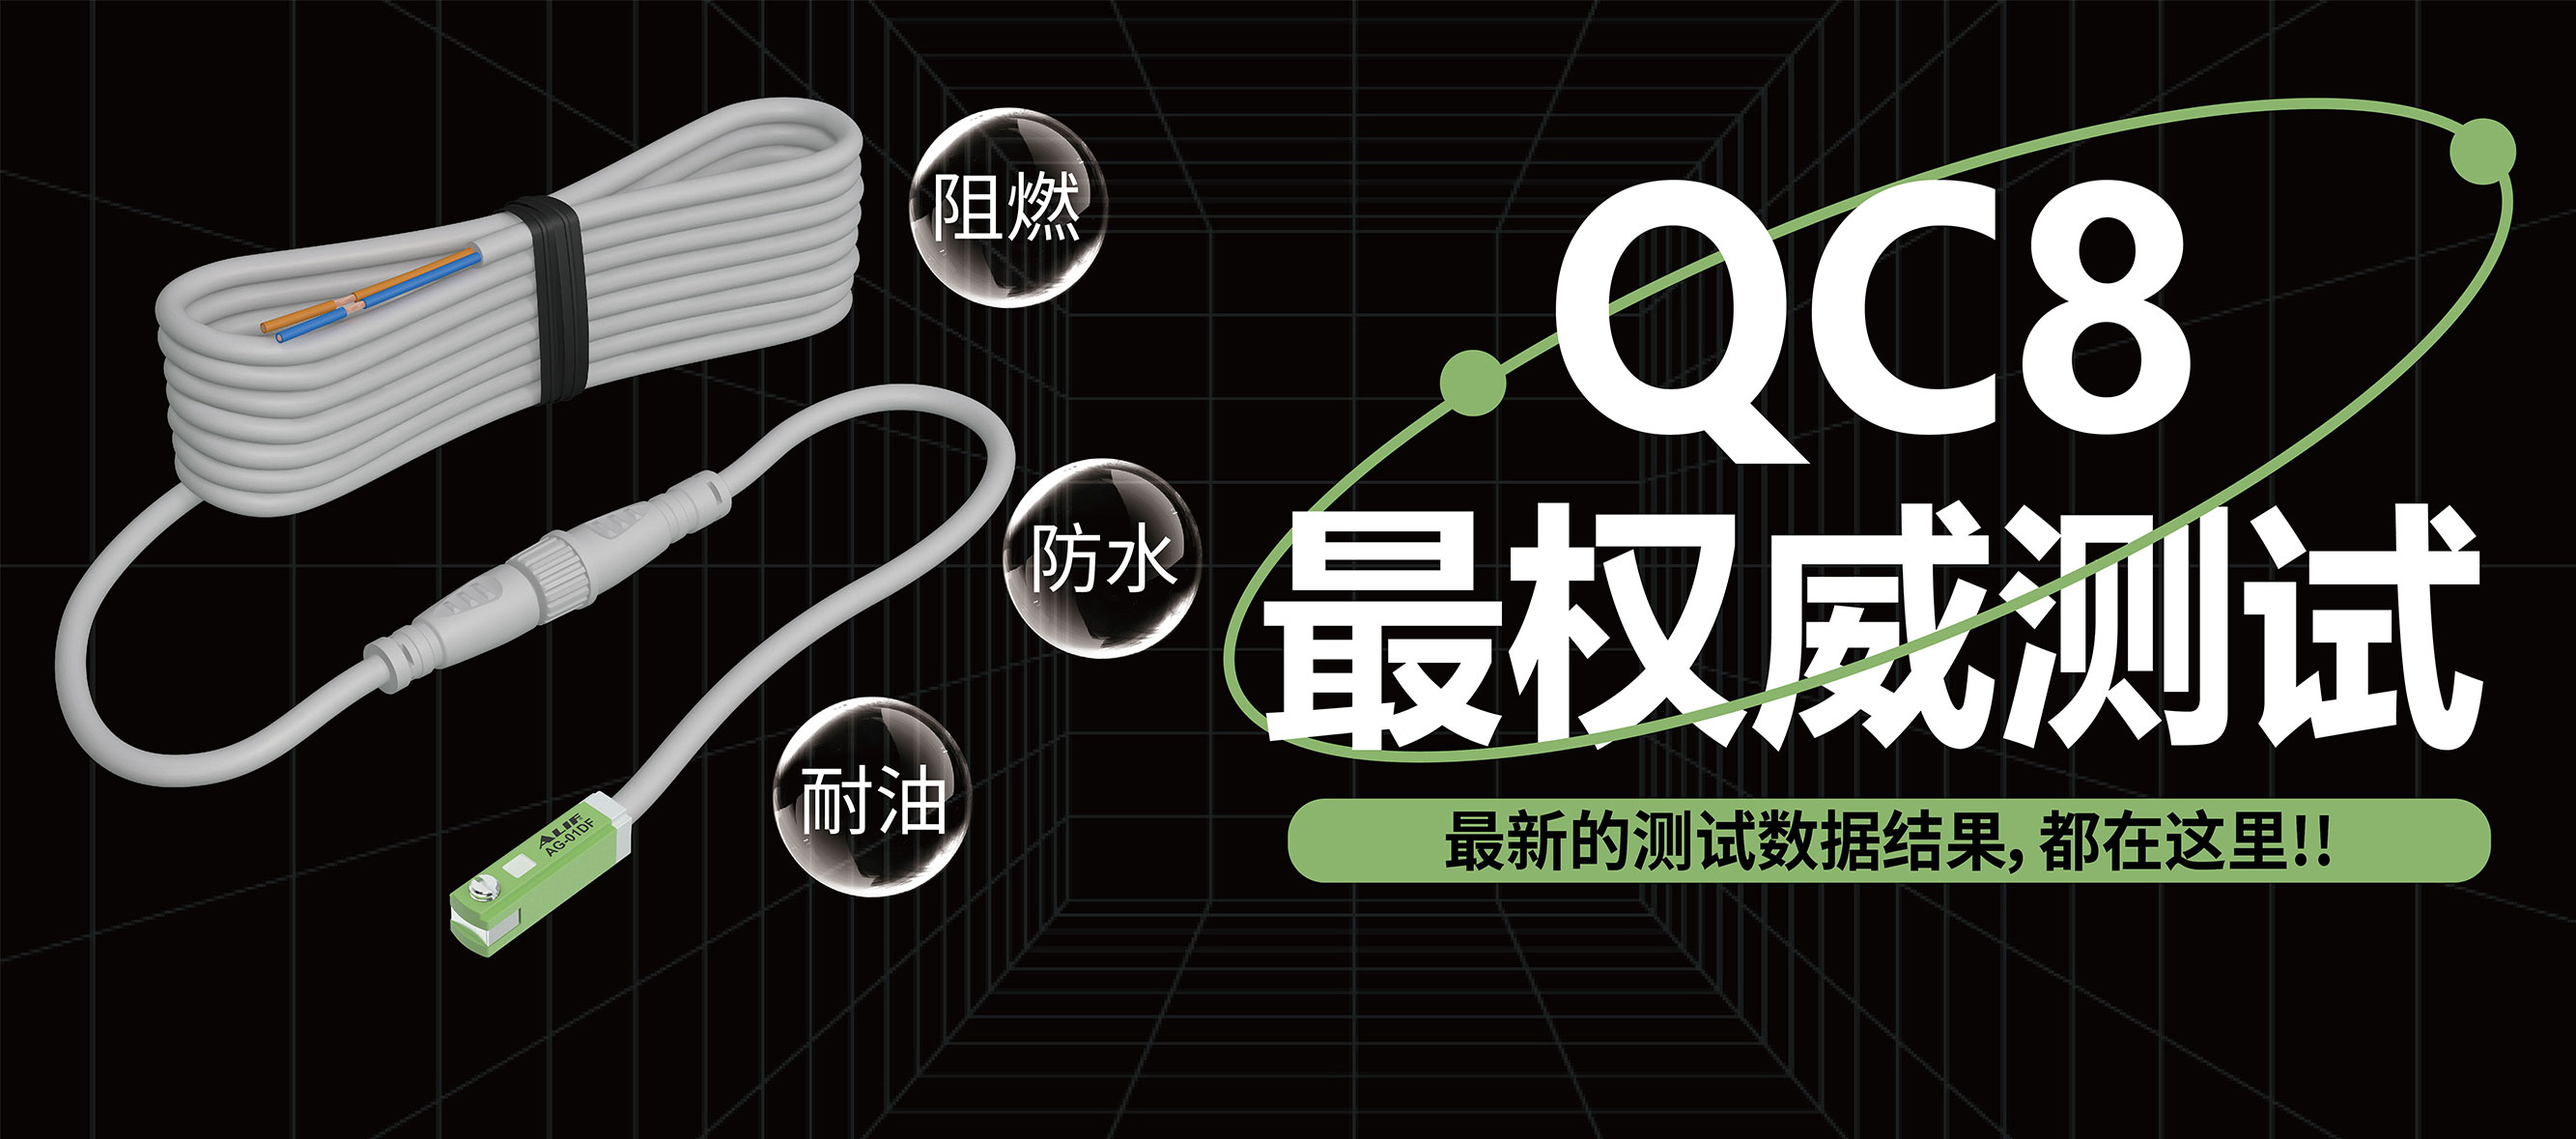 全新「QC8快速接头」测试数据大公开